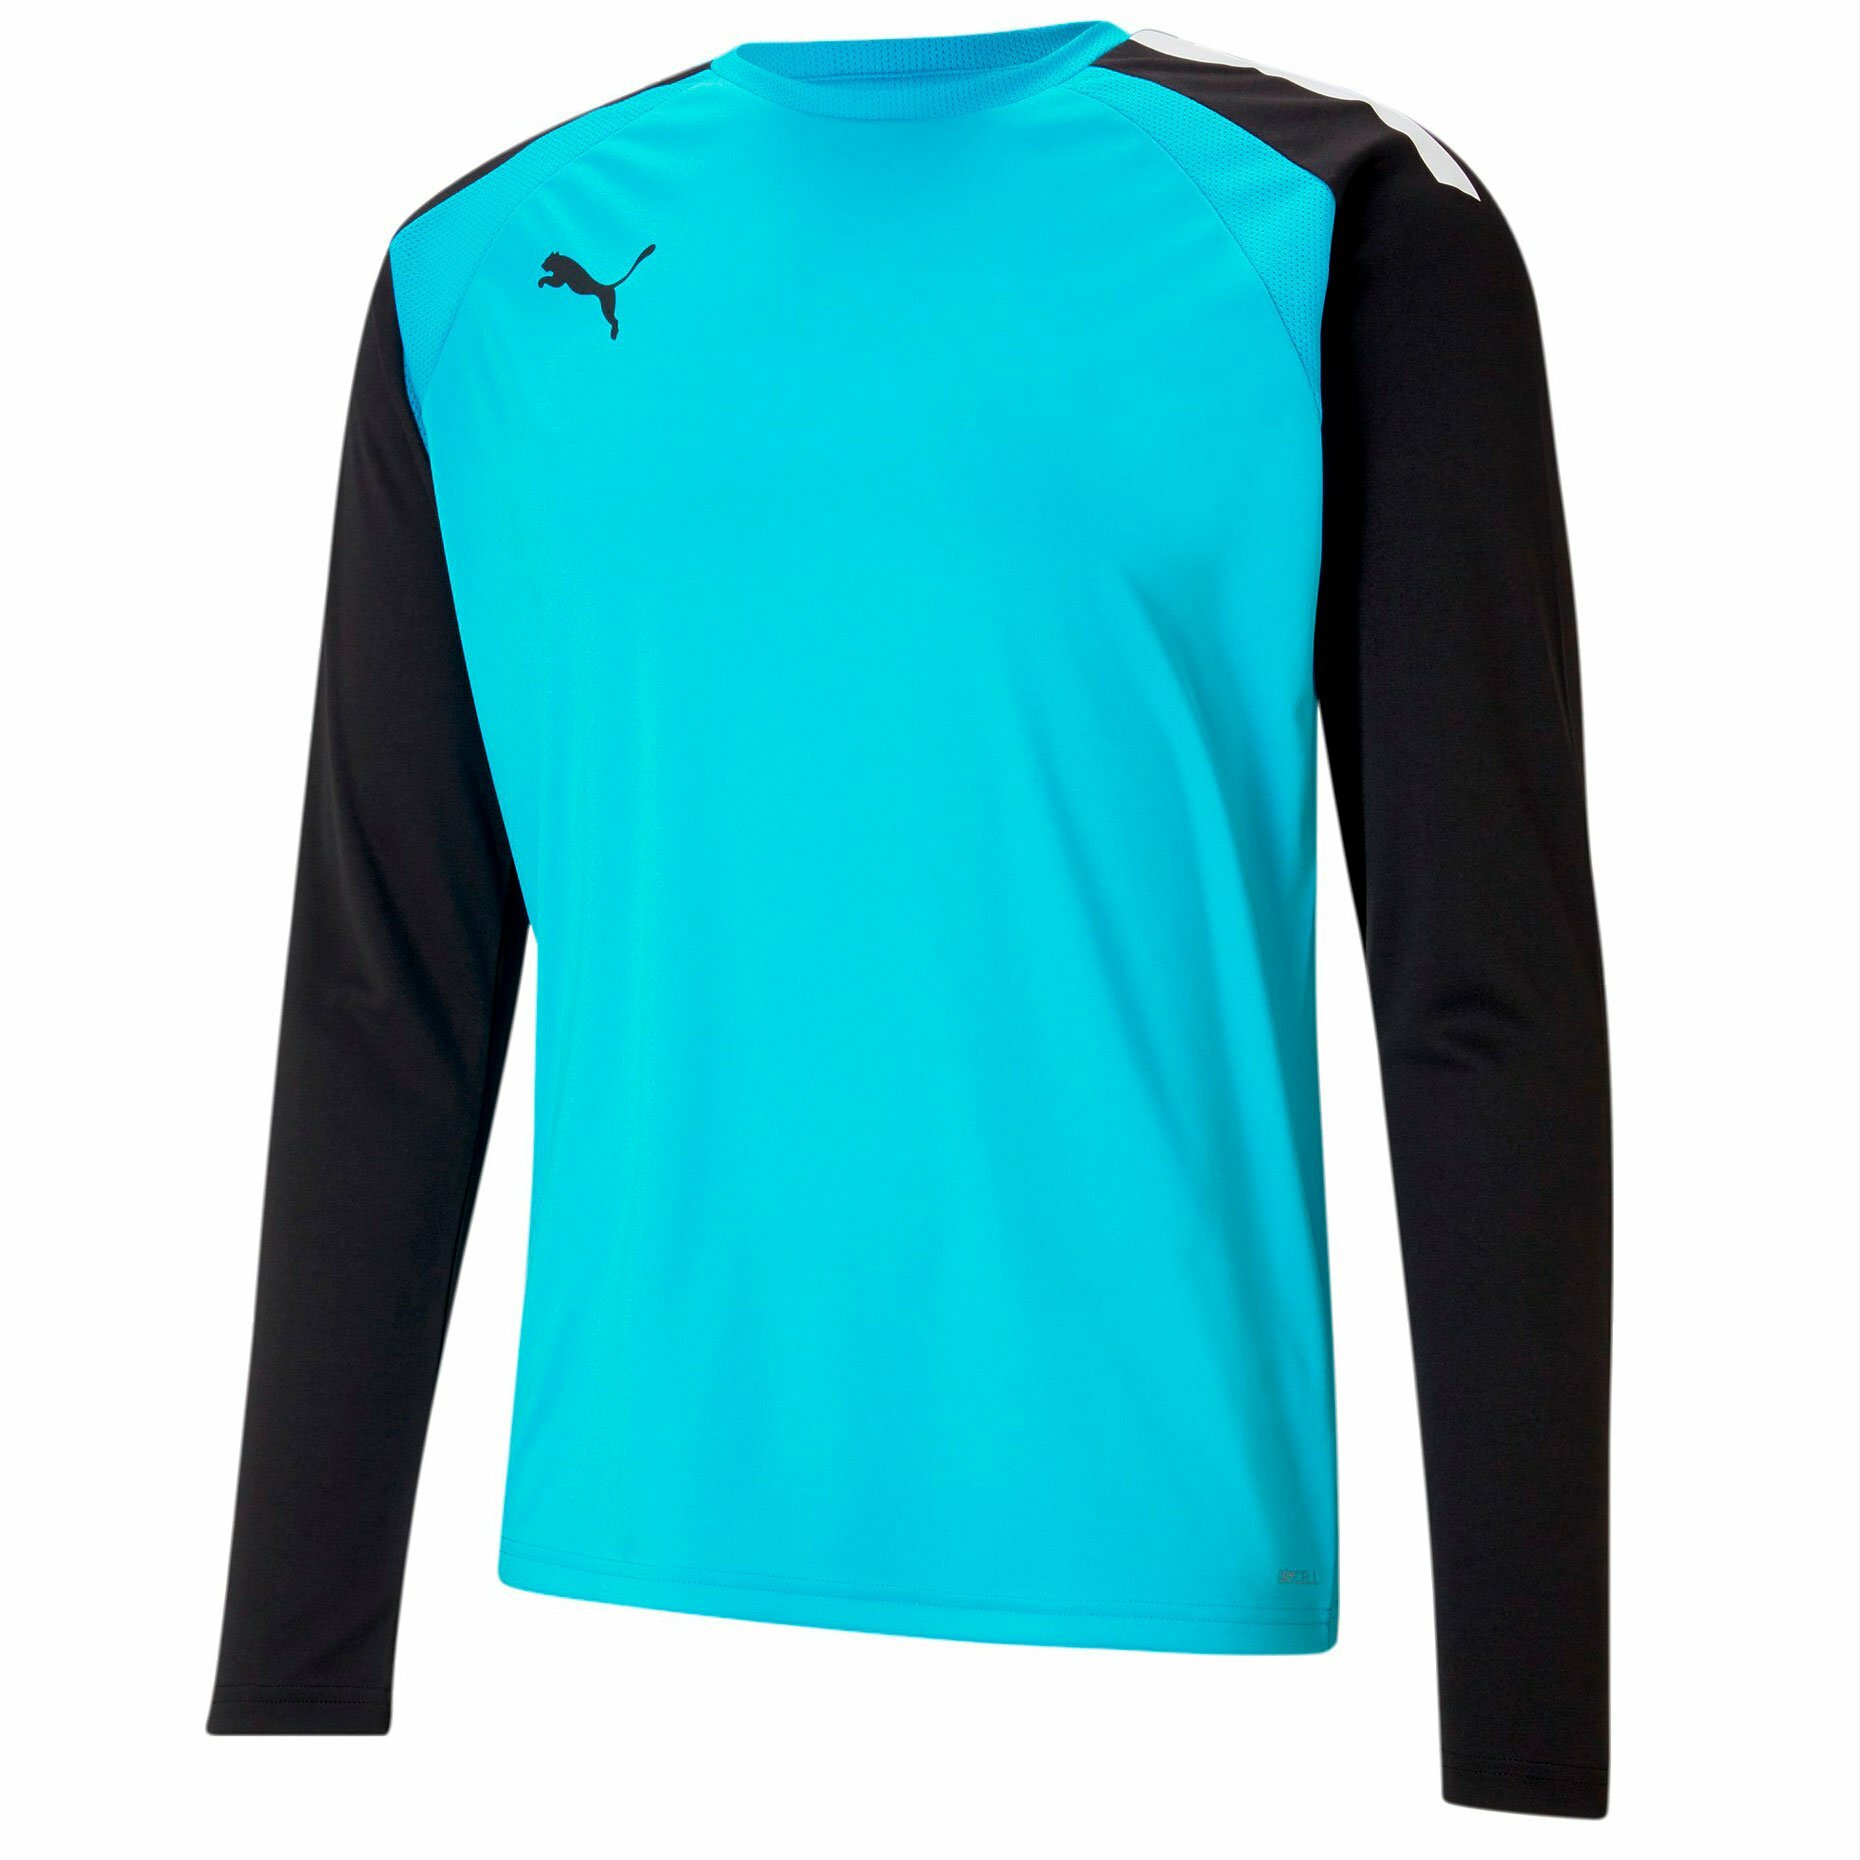 Лонгслив Puma Pacer GK Jersey цвет синий/черный размер XL